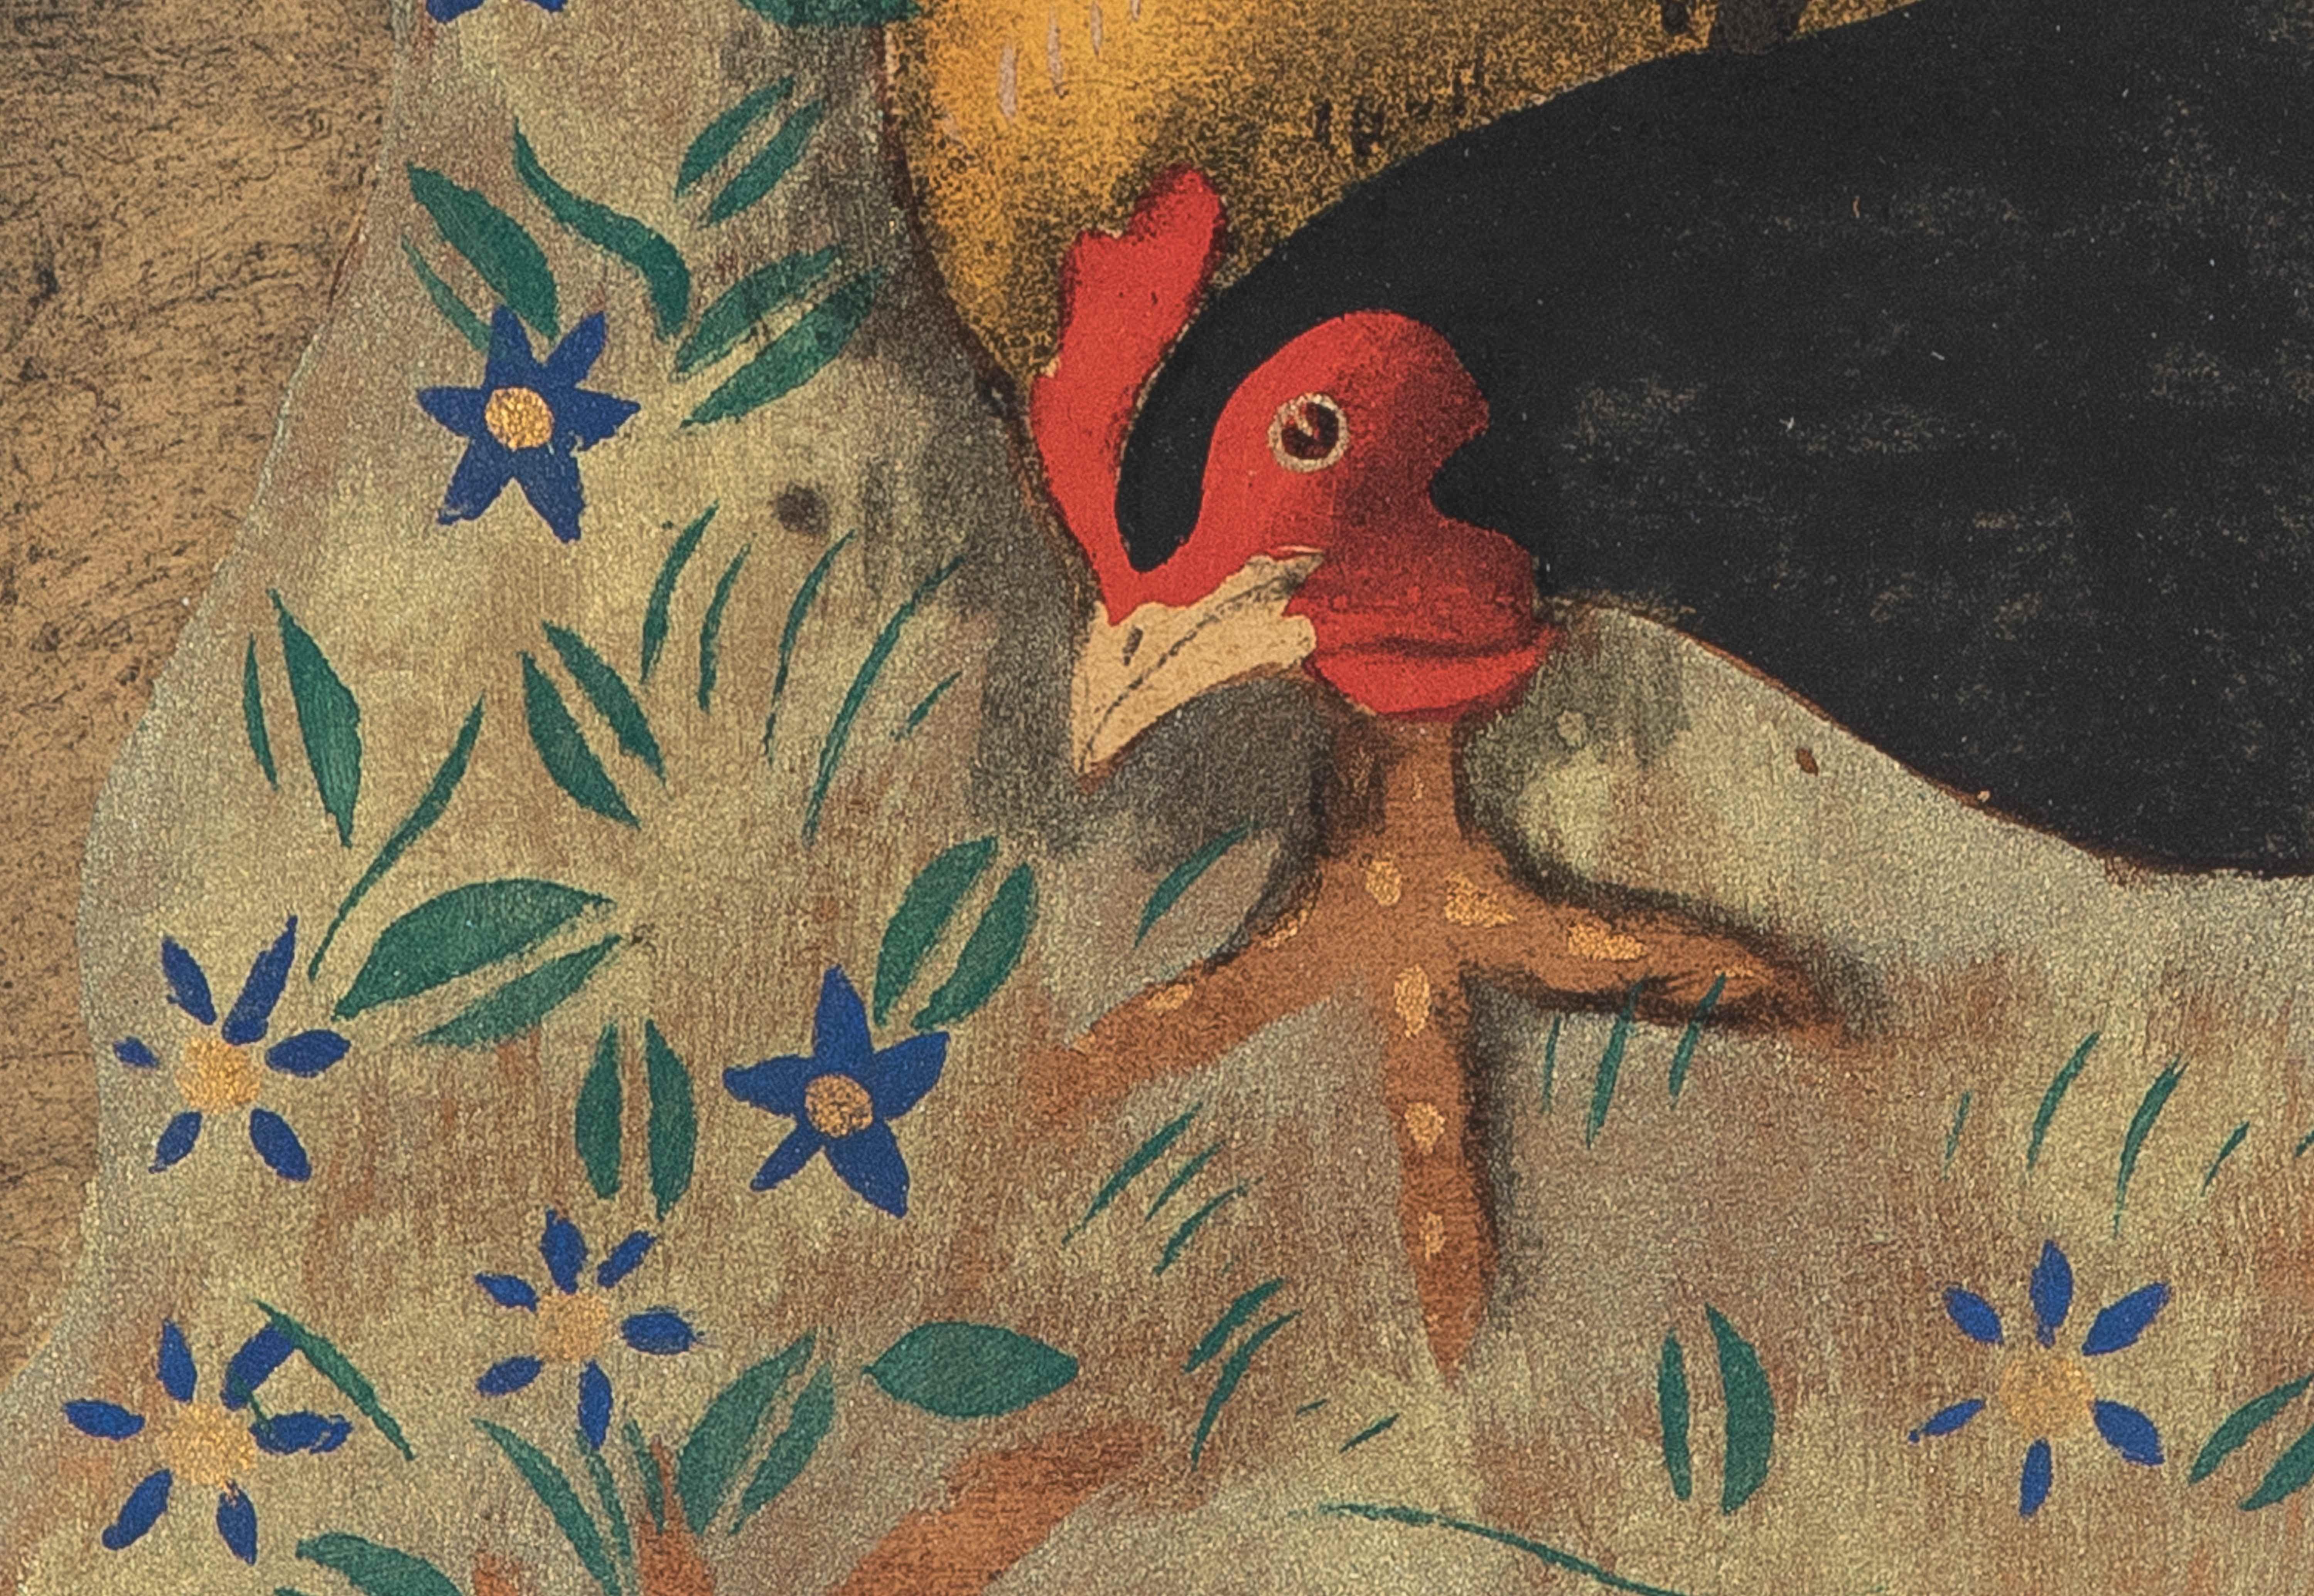 Les poules von Georges Manzana Pissarro (1871-19610)
Pochoir
30 x 46 cm (11 ³/₄ x 18 ¹/₈ Zoll)
Signiert mit Nachlassstempel Manzana Pissarro und nummeriert 7/100 unten links

Biographie des Künstlers:
Wie alle Pissarro-Künstler der zweiten